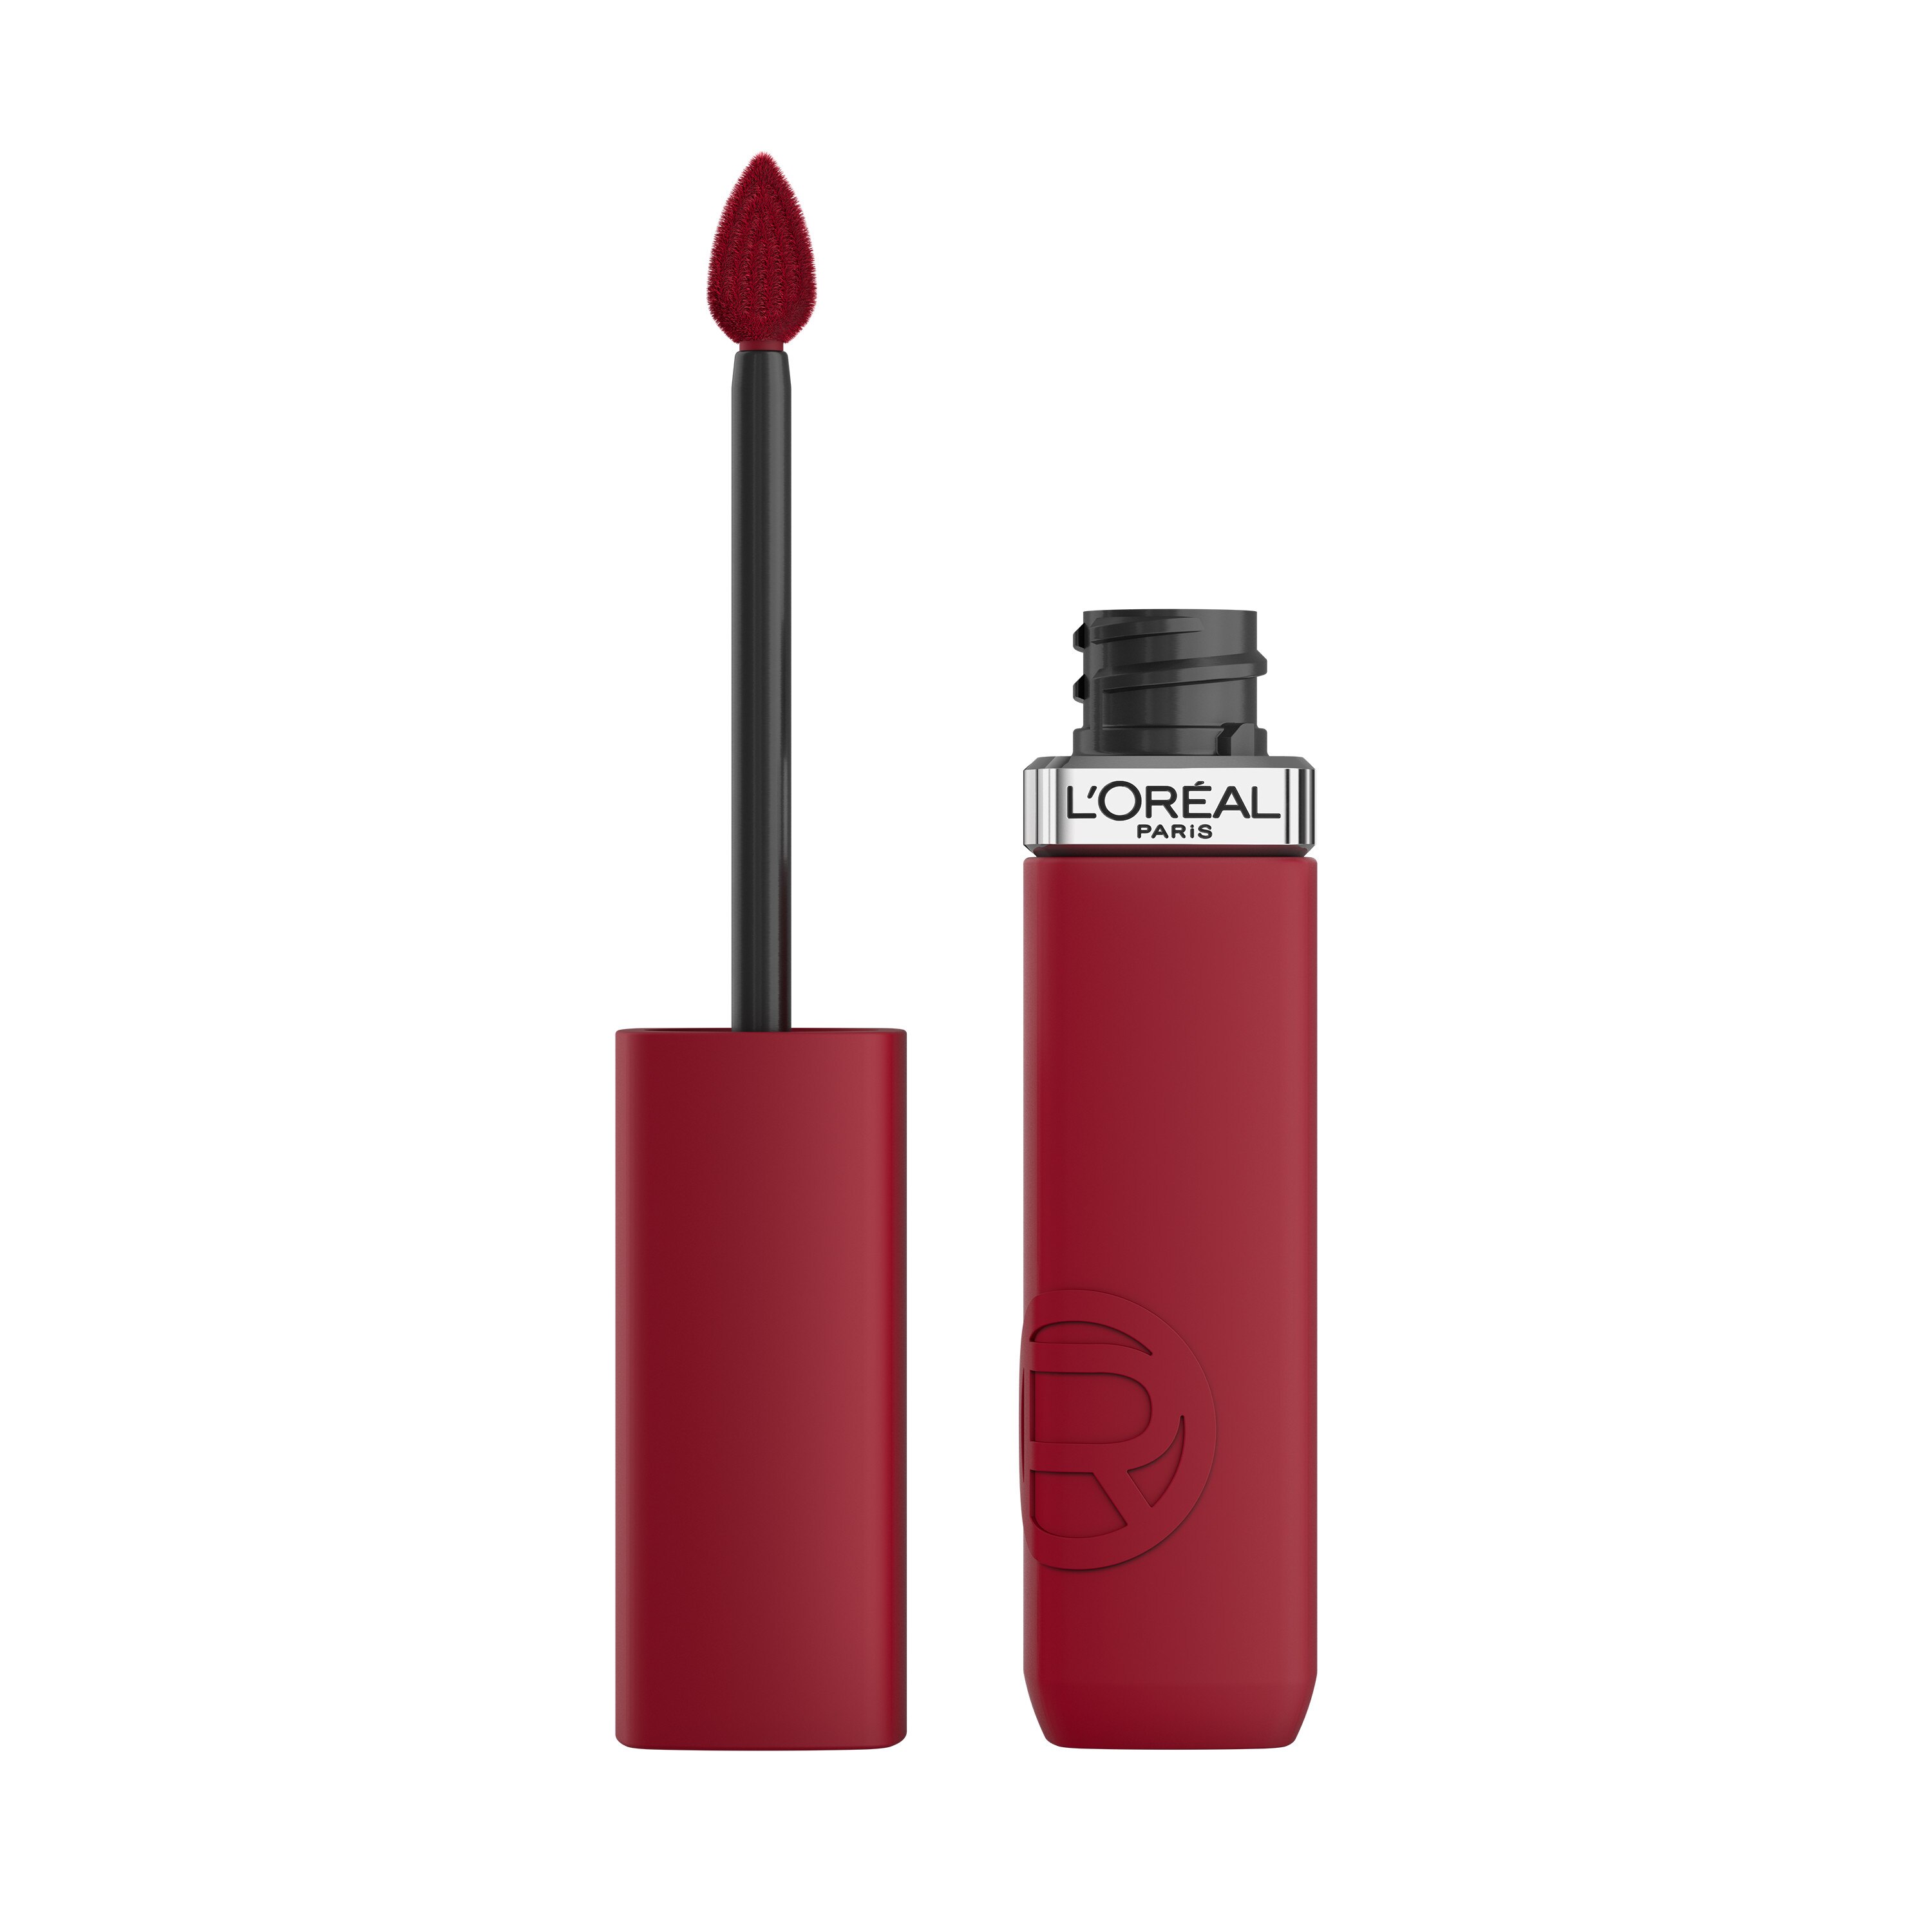 L'Oreal Paris Infallible Matte Resistance Liquid Lipstick, Le Rouge Paris , CVS